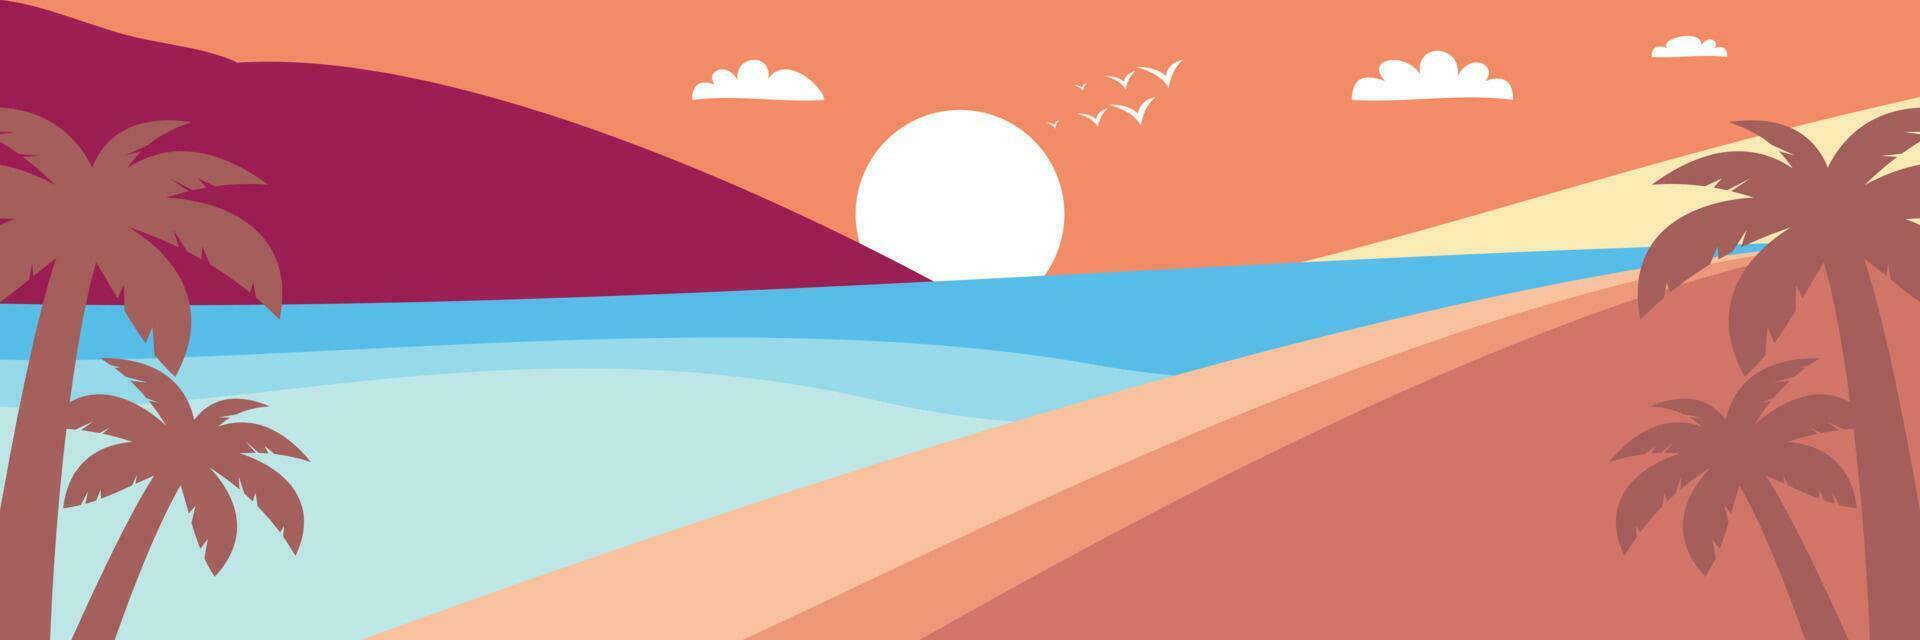 färgrik sommar bakgrund med solnedgång nyanser och handflatan träd ikoner. vektor illustration för PR banderoller, hälsning kort, affischer, social media och webb.